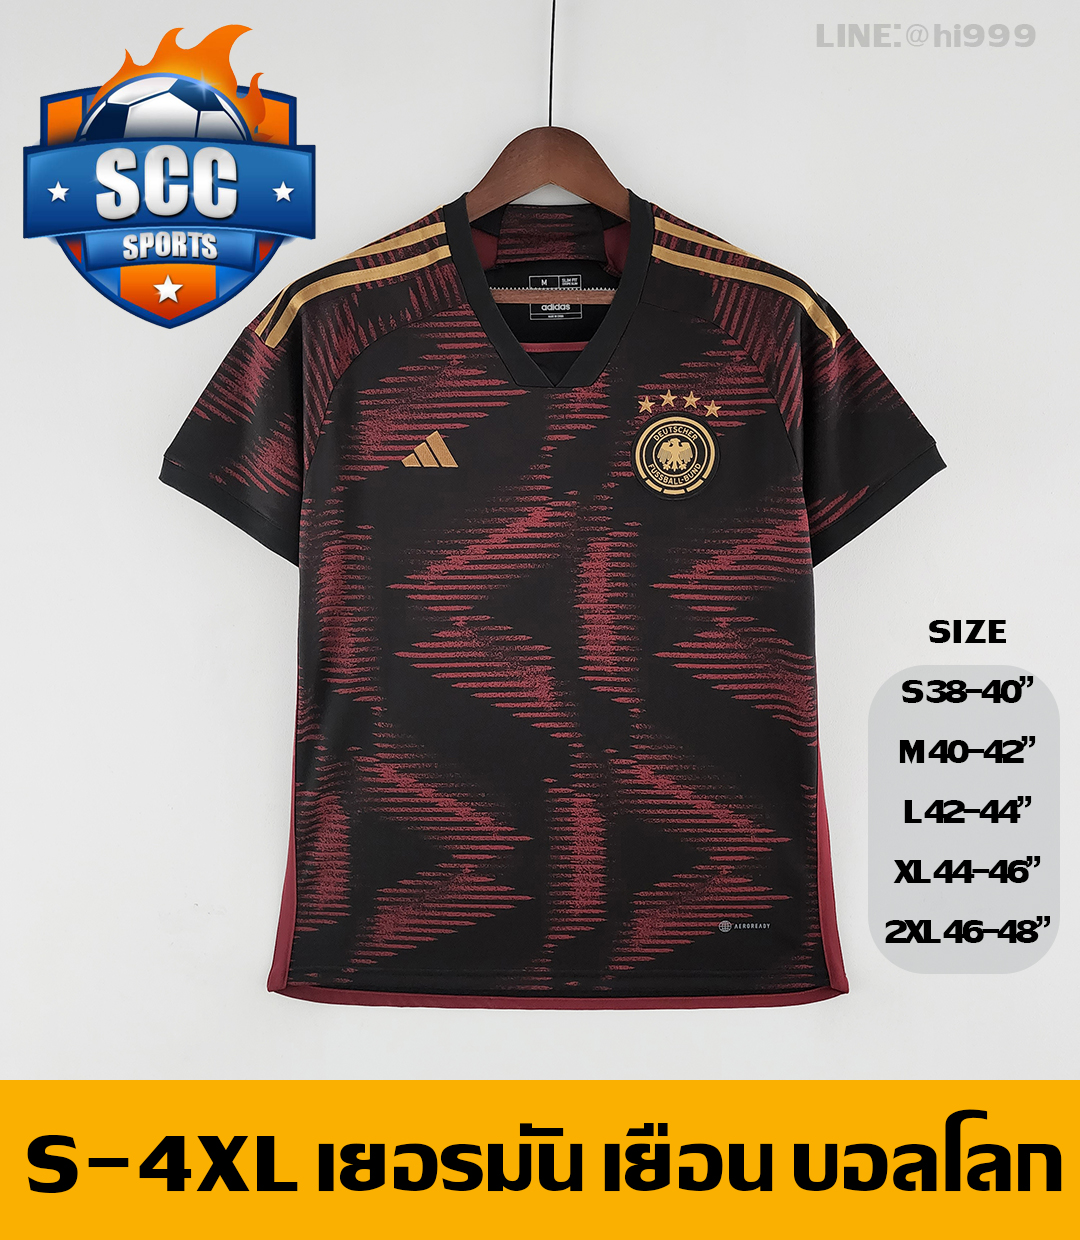 Images/Blog/IKchfm3y-เสื้อบอล เยอรมัน บอลโลก 2022 ทีมเยือน - SCC SPORTS 2.jpg